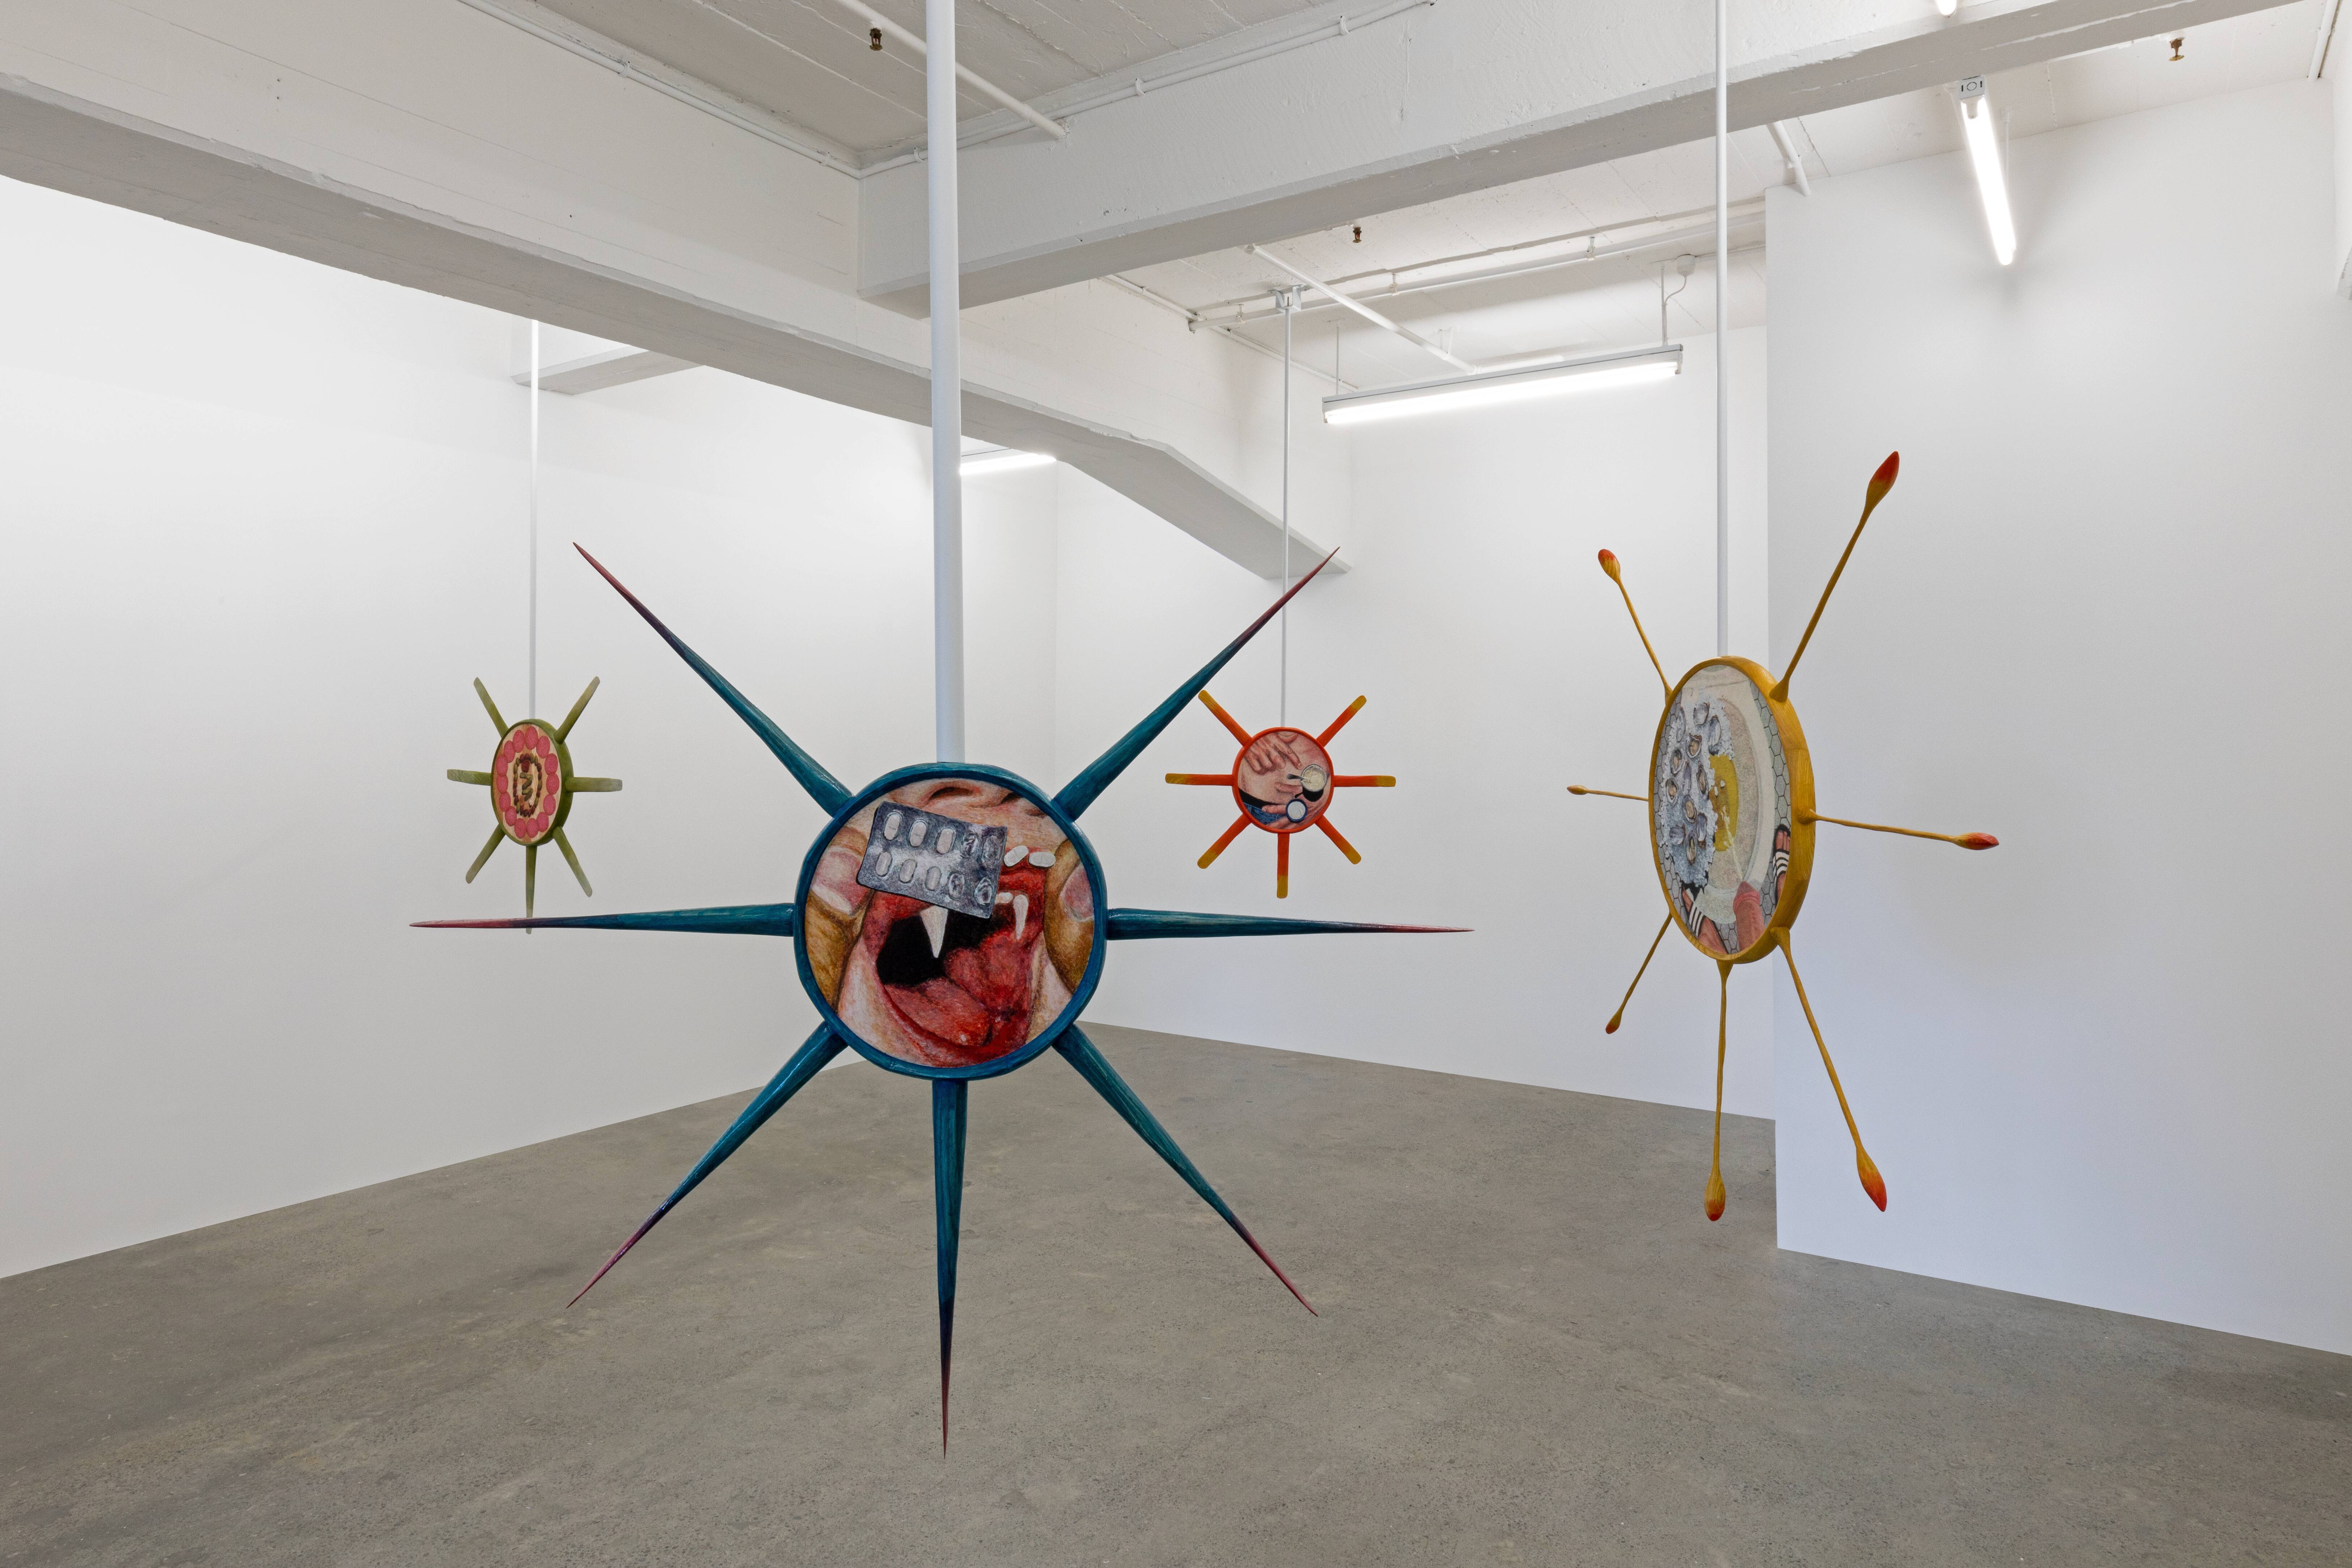 <p><strong>Owen Connors&nbsp;</strong><em>Incubations</em>, 2021 (installation view), Robert Heald Gallery. Photo courtesy: Robert Heald Gallery</p>
